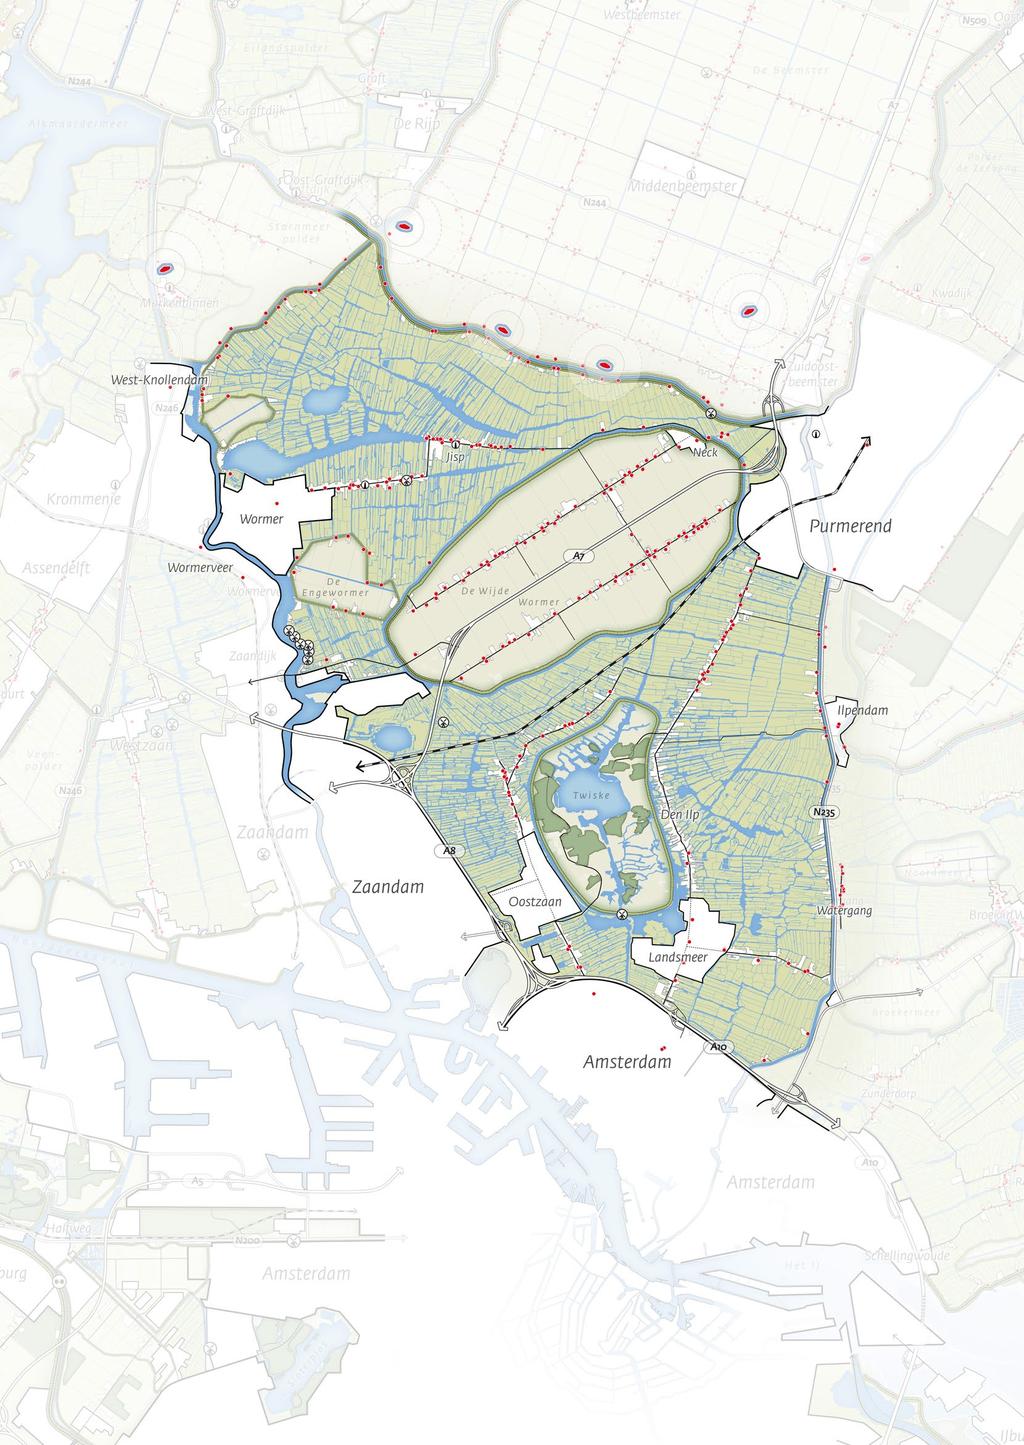 Wormerland - Oostzaan Provincie Noord-Holland 5 OVERZICHTSKAART WORMERLAND - OOSTZAAN Veenpolderlandschap met slotenpatroon Droogmakerijenlandschap met verkavelingsrichting Recreatie-/natuurgebied